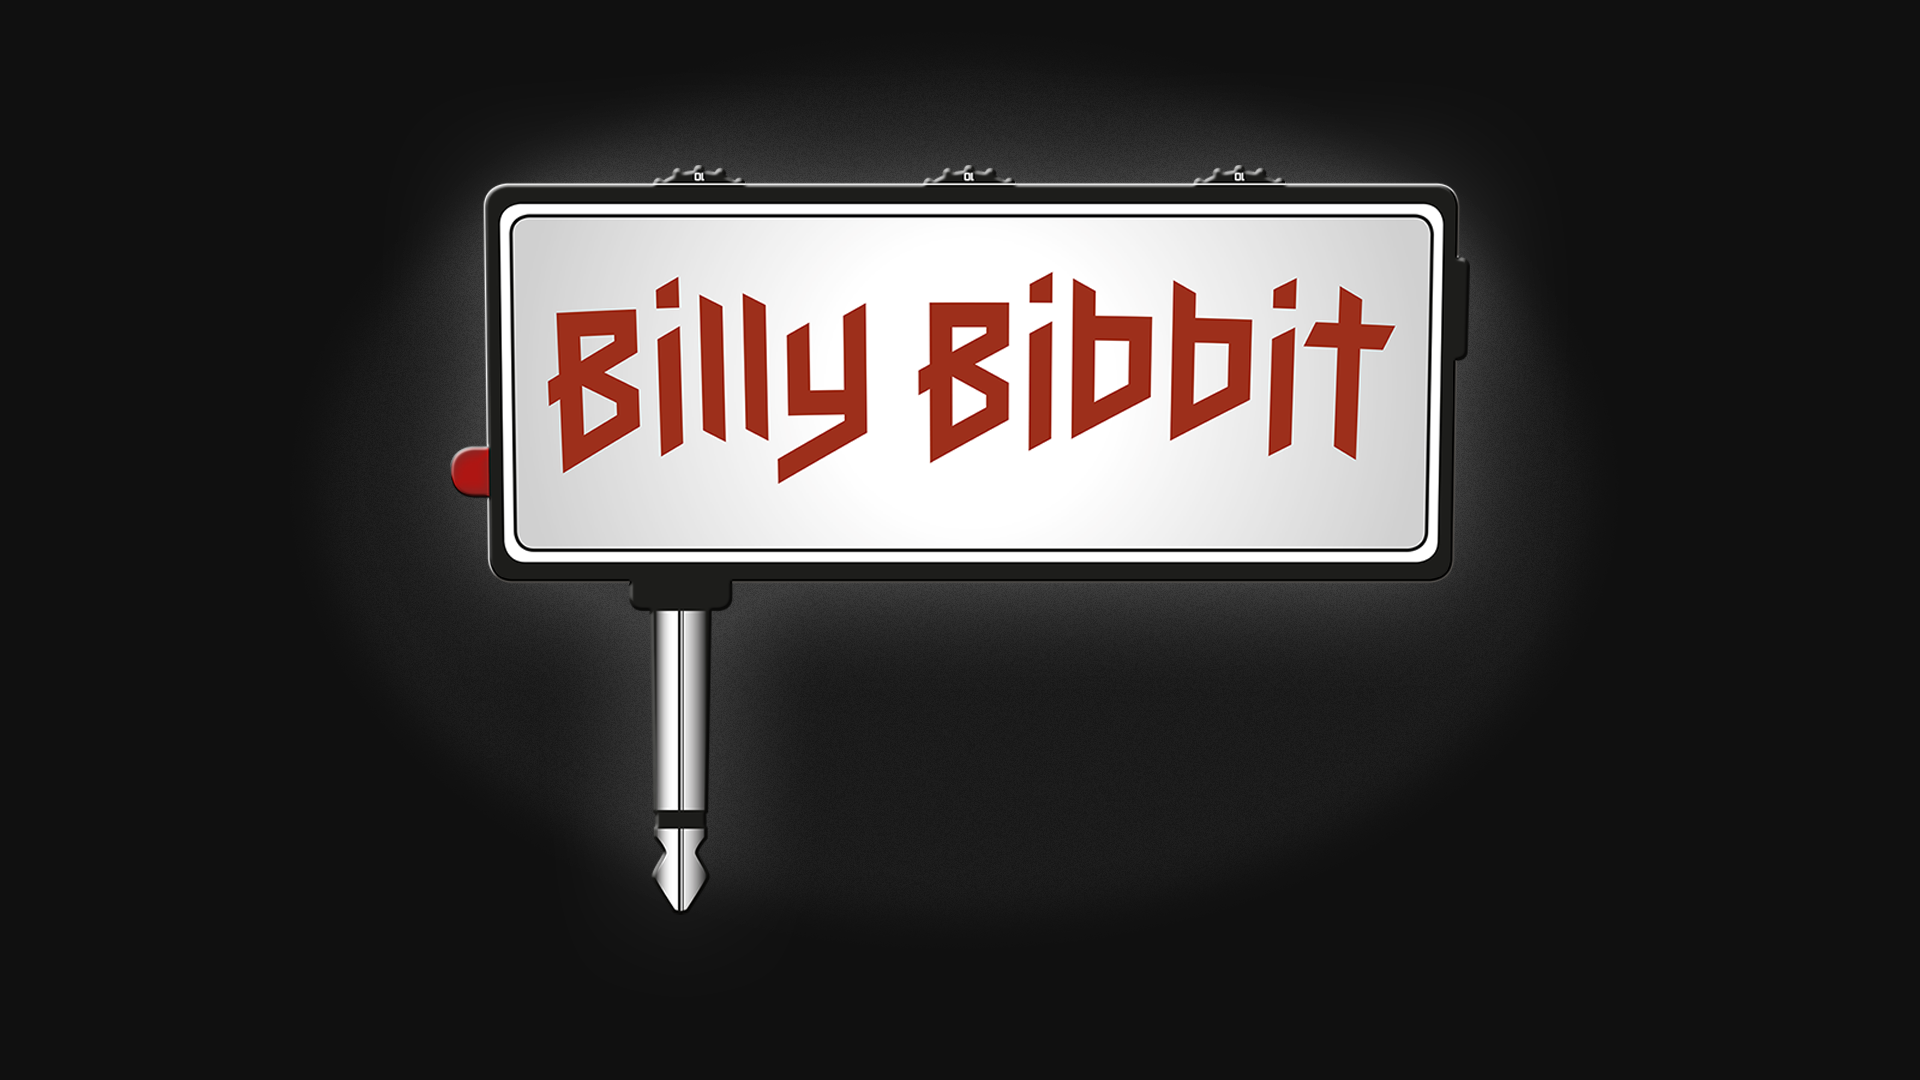 BillyBibbit